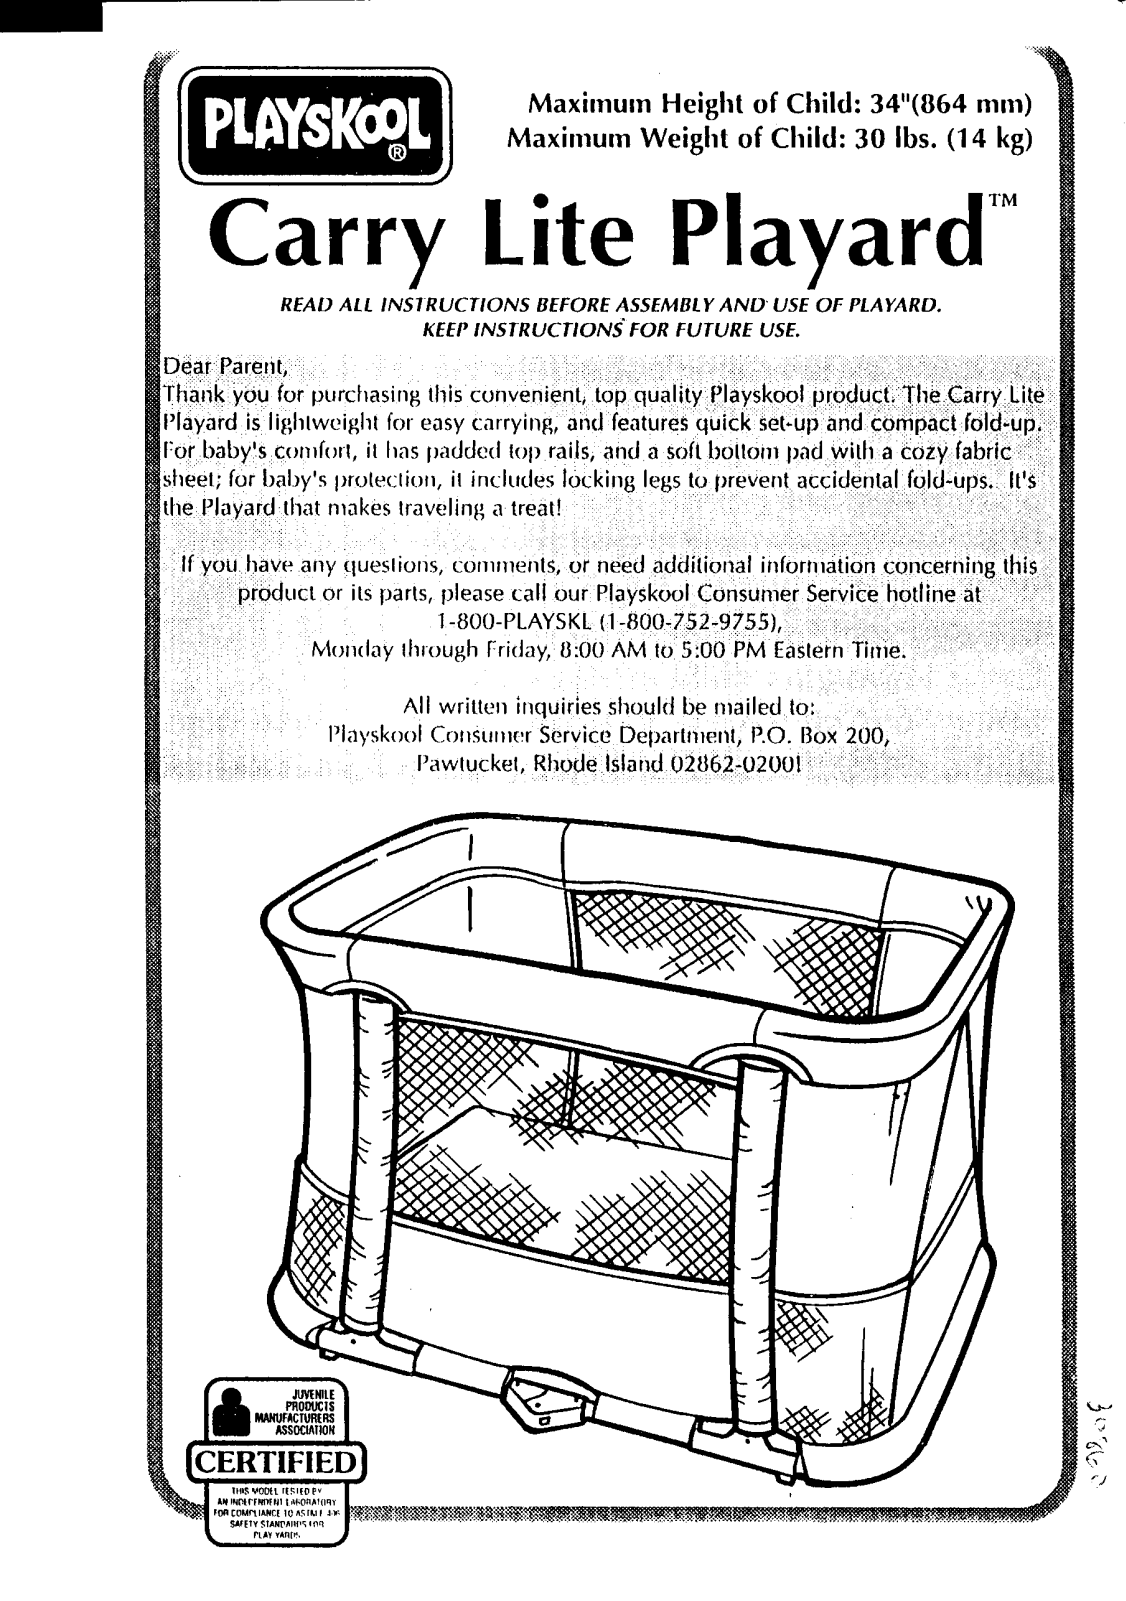 HASBRO CarryLite Playard User Manual